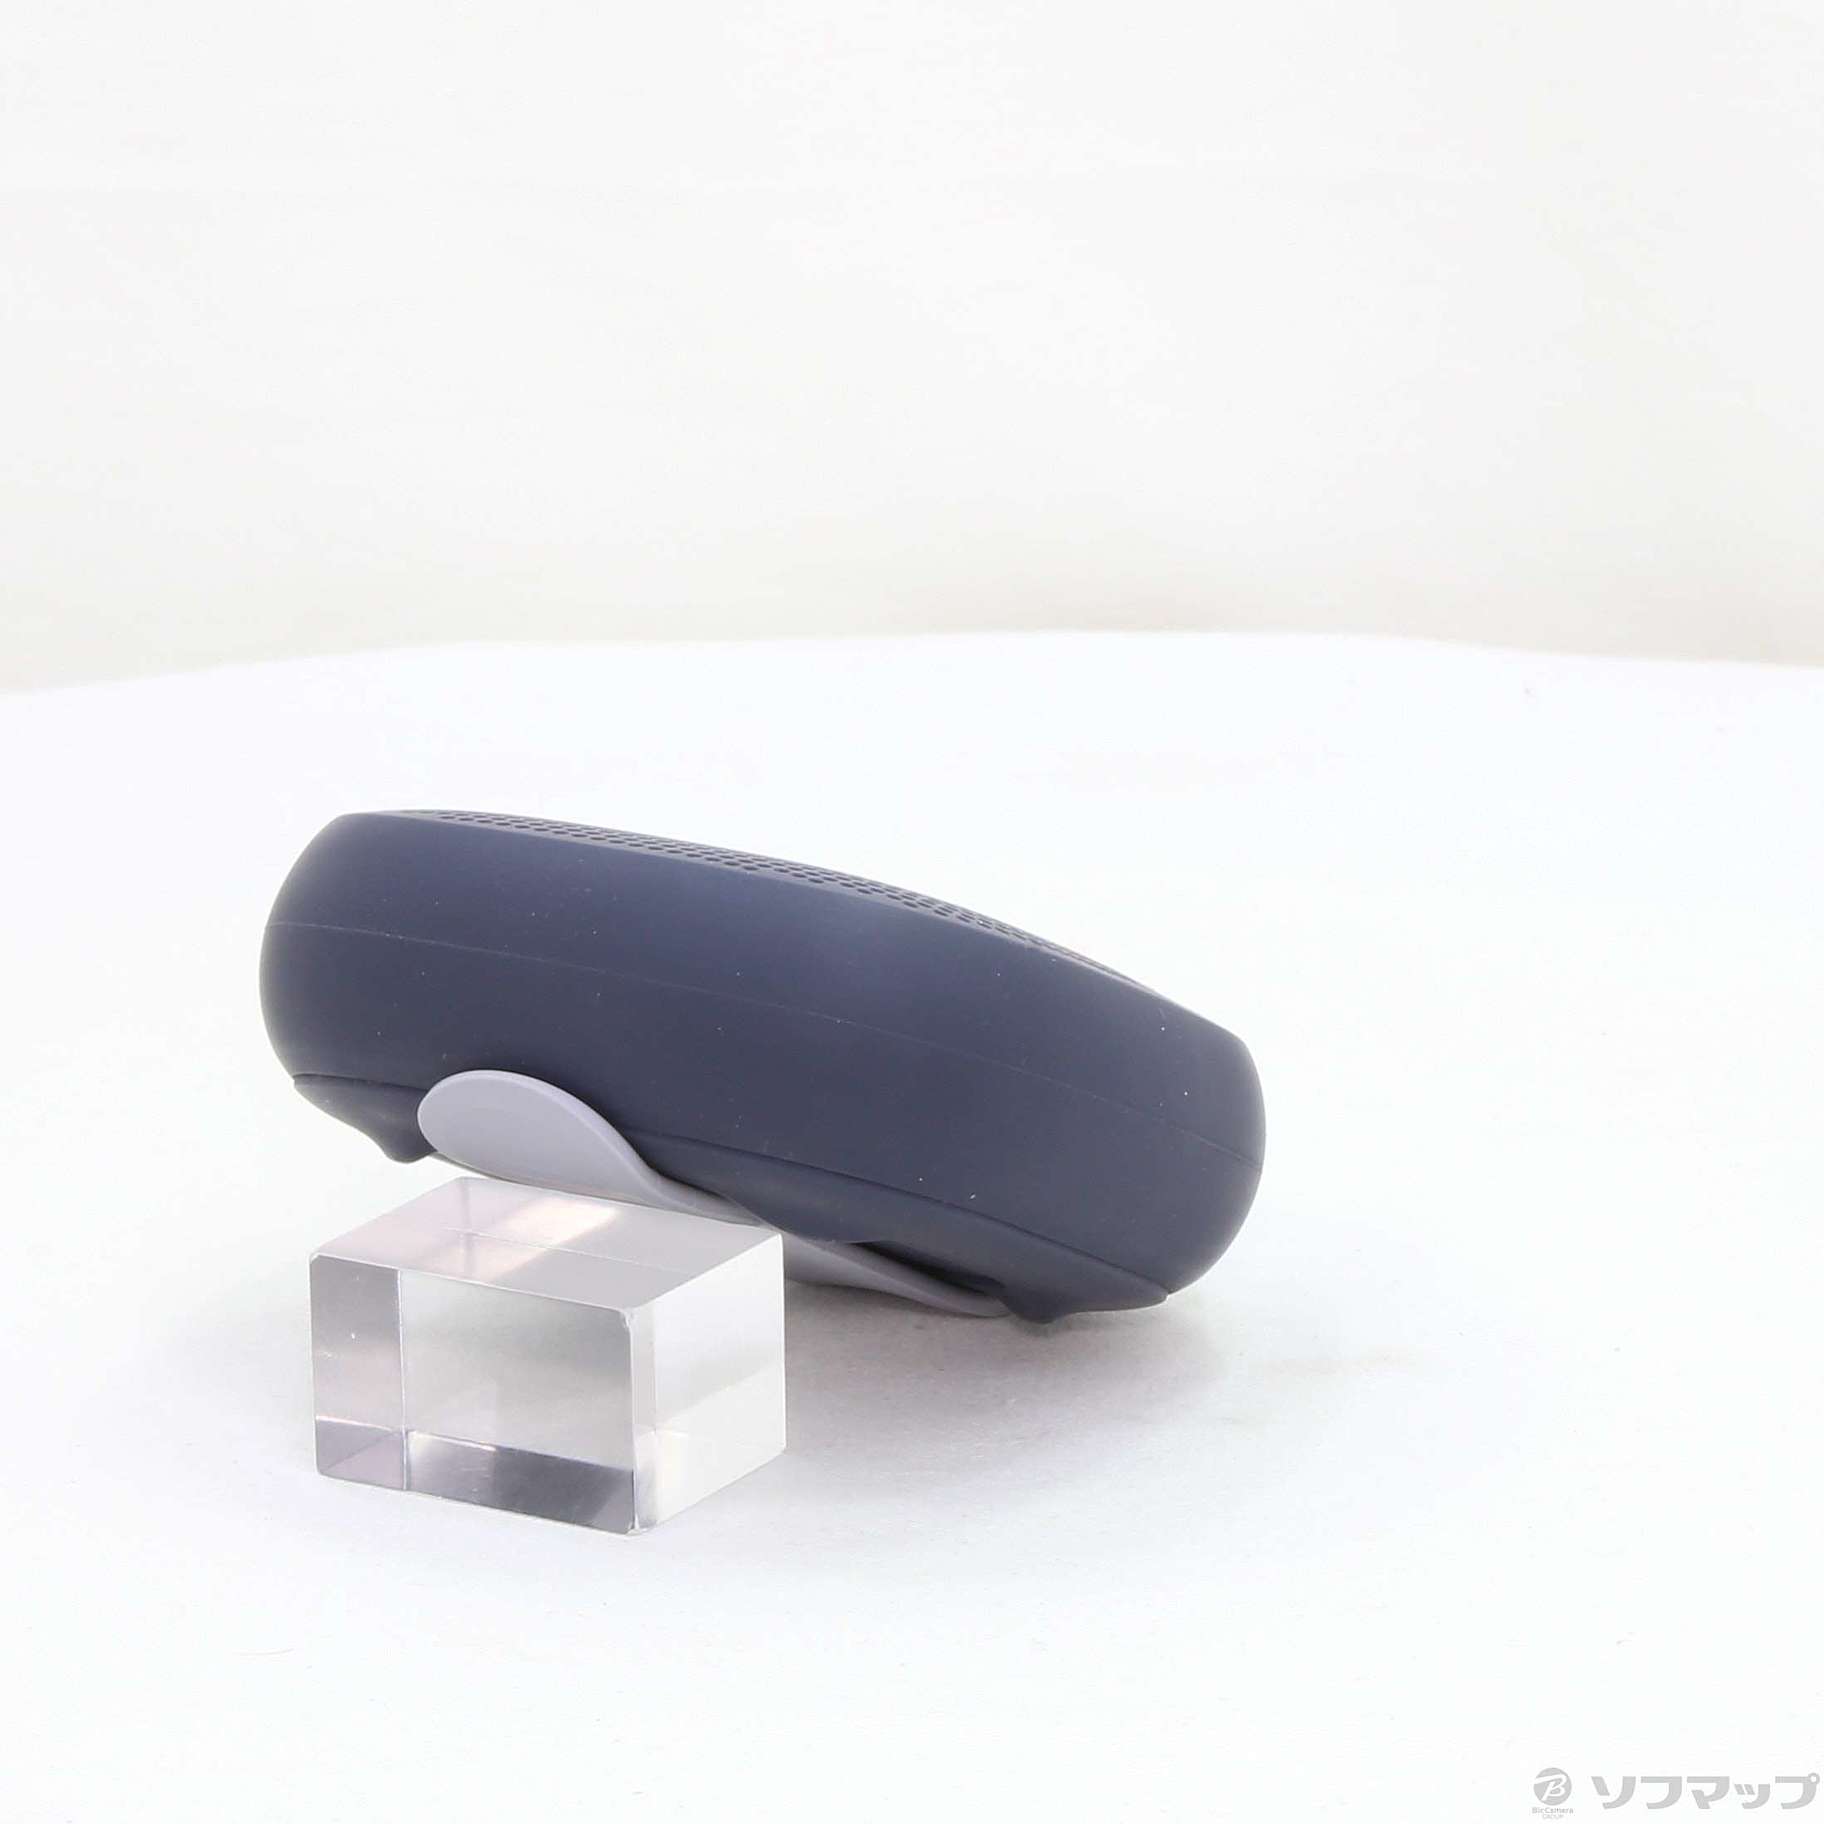 中古】セール対象品 SoundLink Micro Bluetooth Speaker ミッドナイト